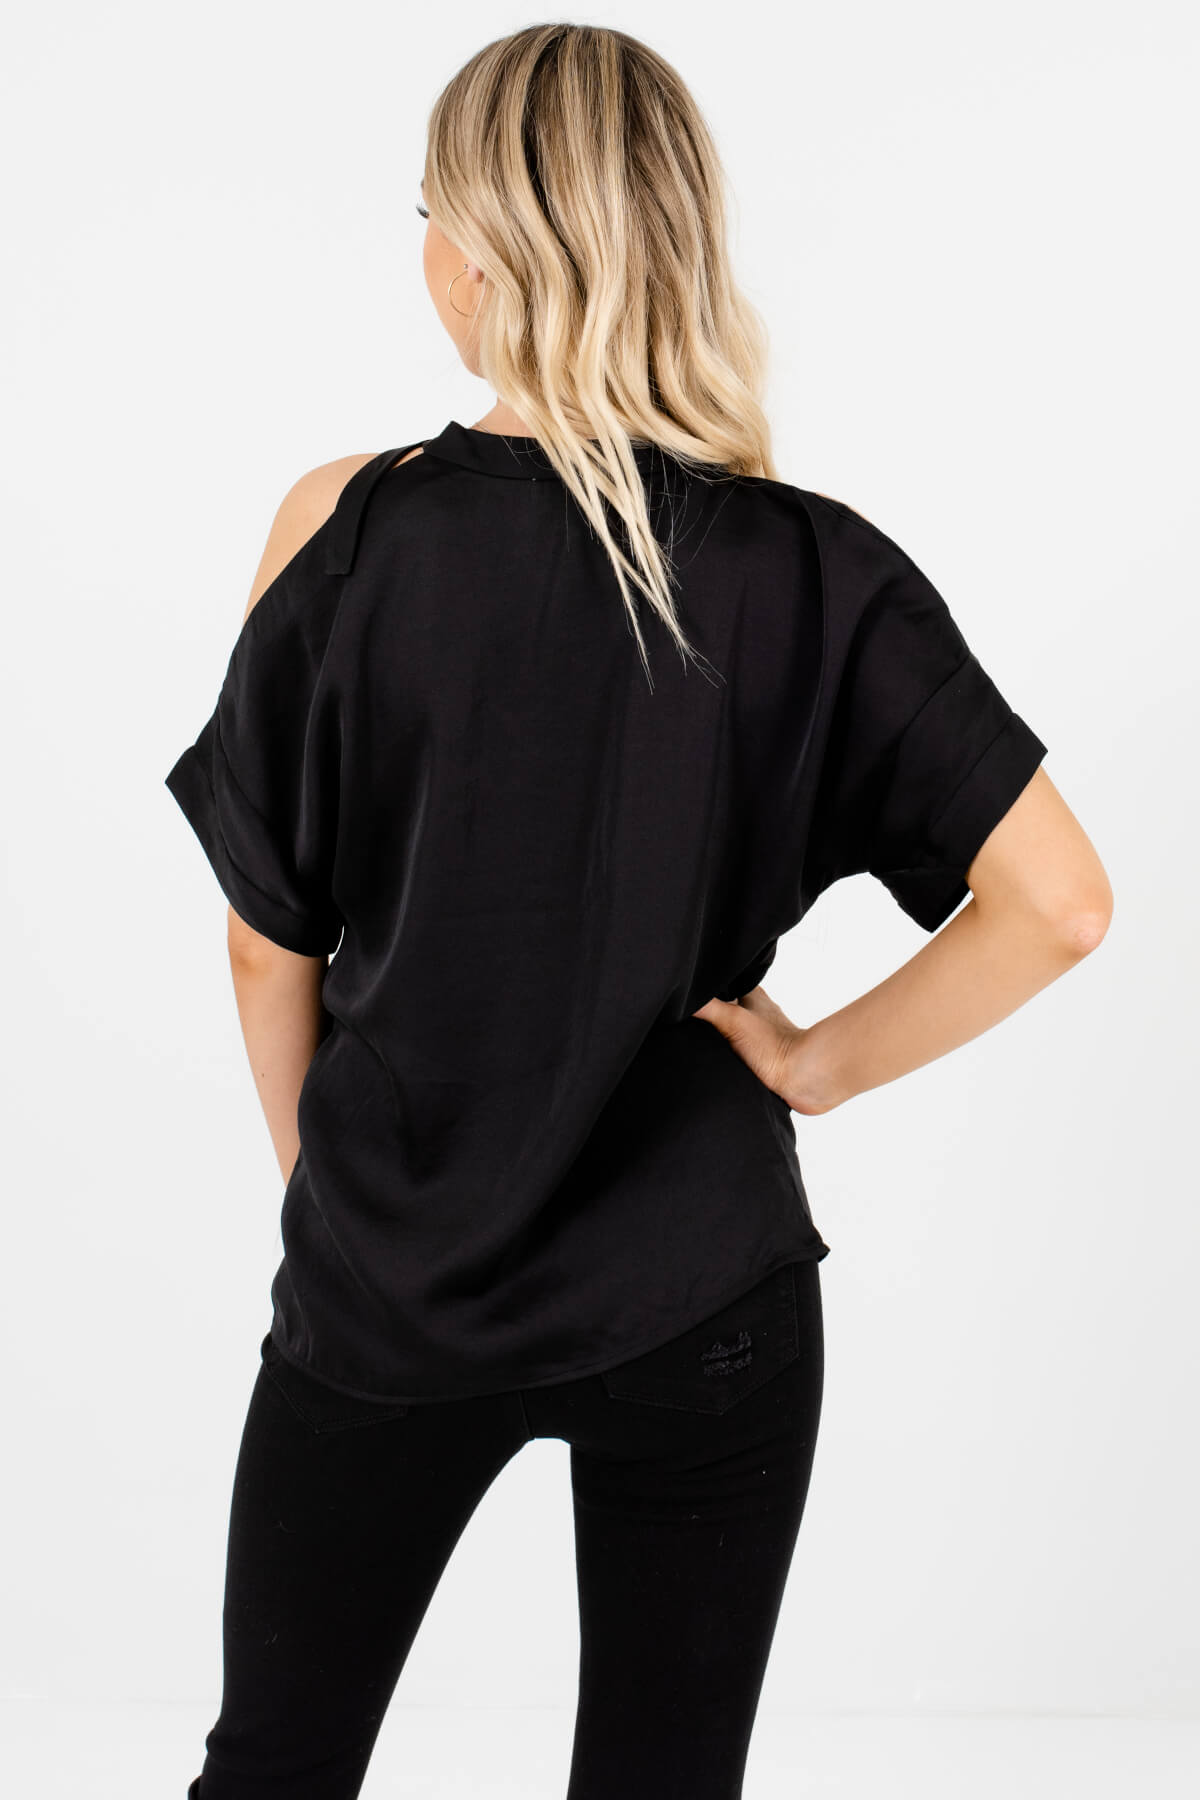 Black Satin Lace Belted Neckline Blouses Affordable Online Boutique